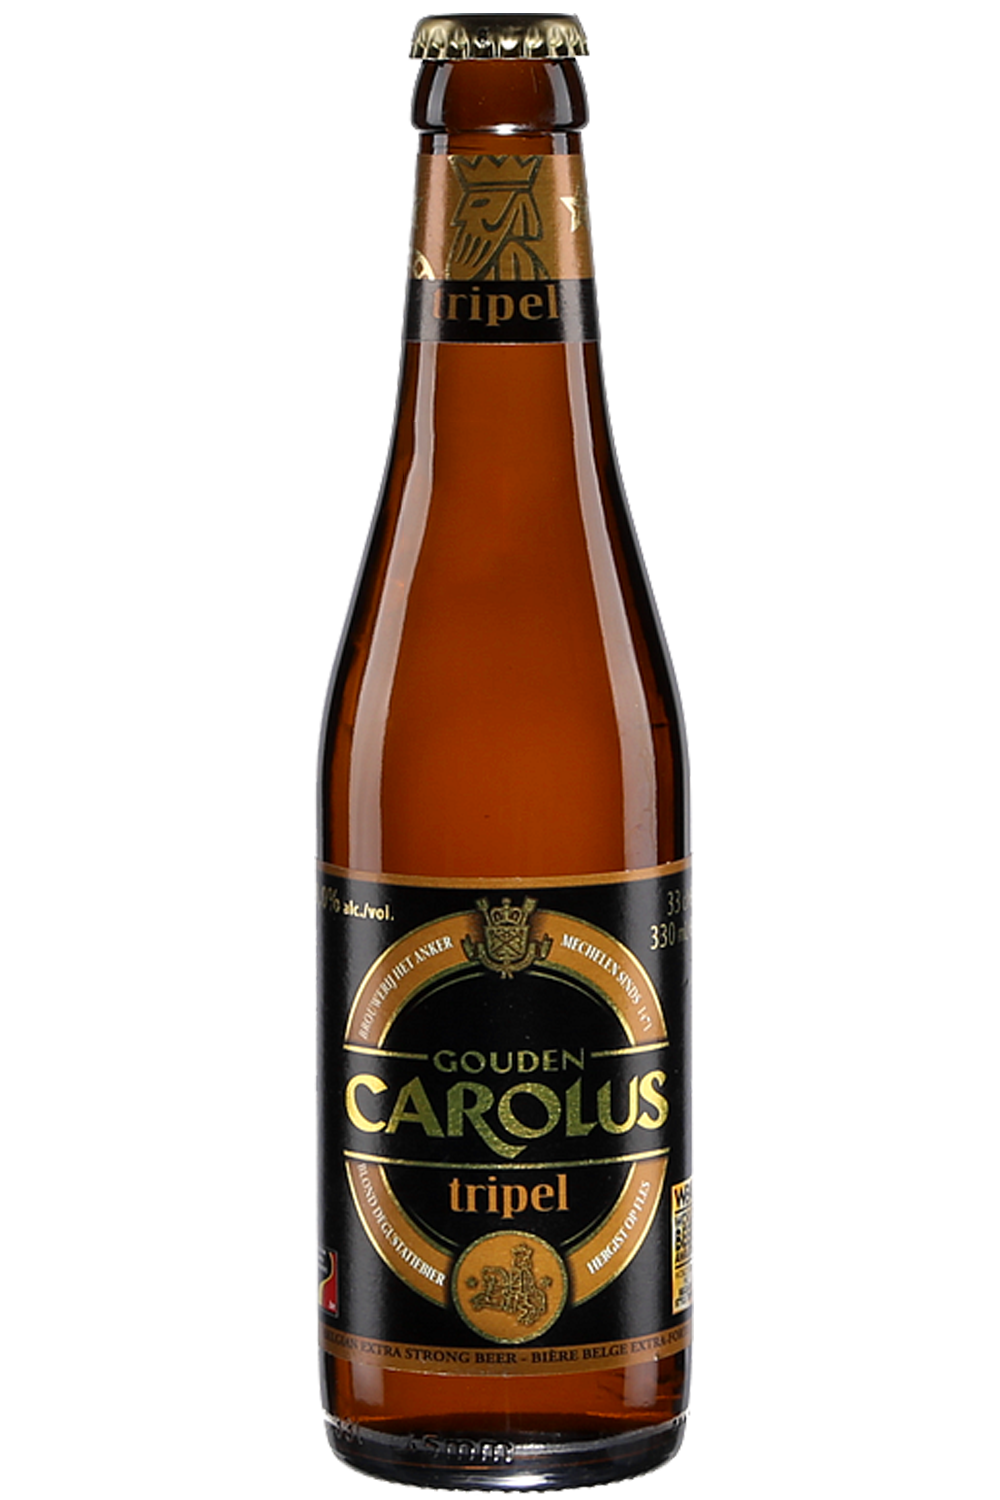 Cerveza G.Carolus Tripel 33 cl. - Birrak